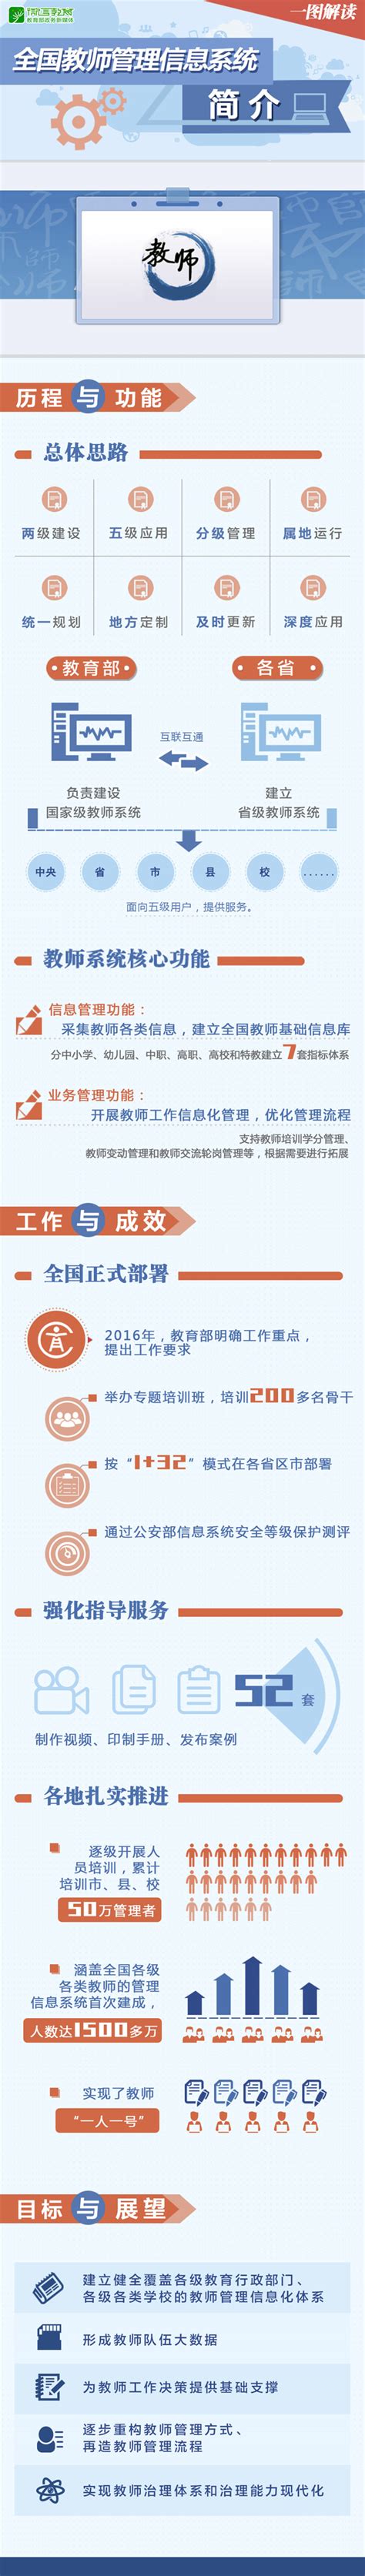 青海省全国教师管理信息系统官方网站_网站导航_极趣网